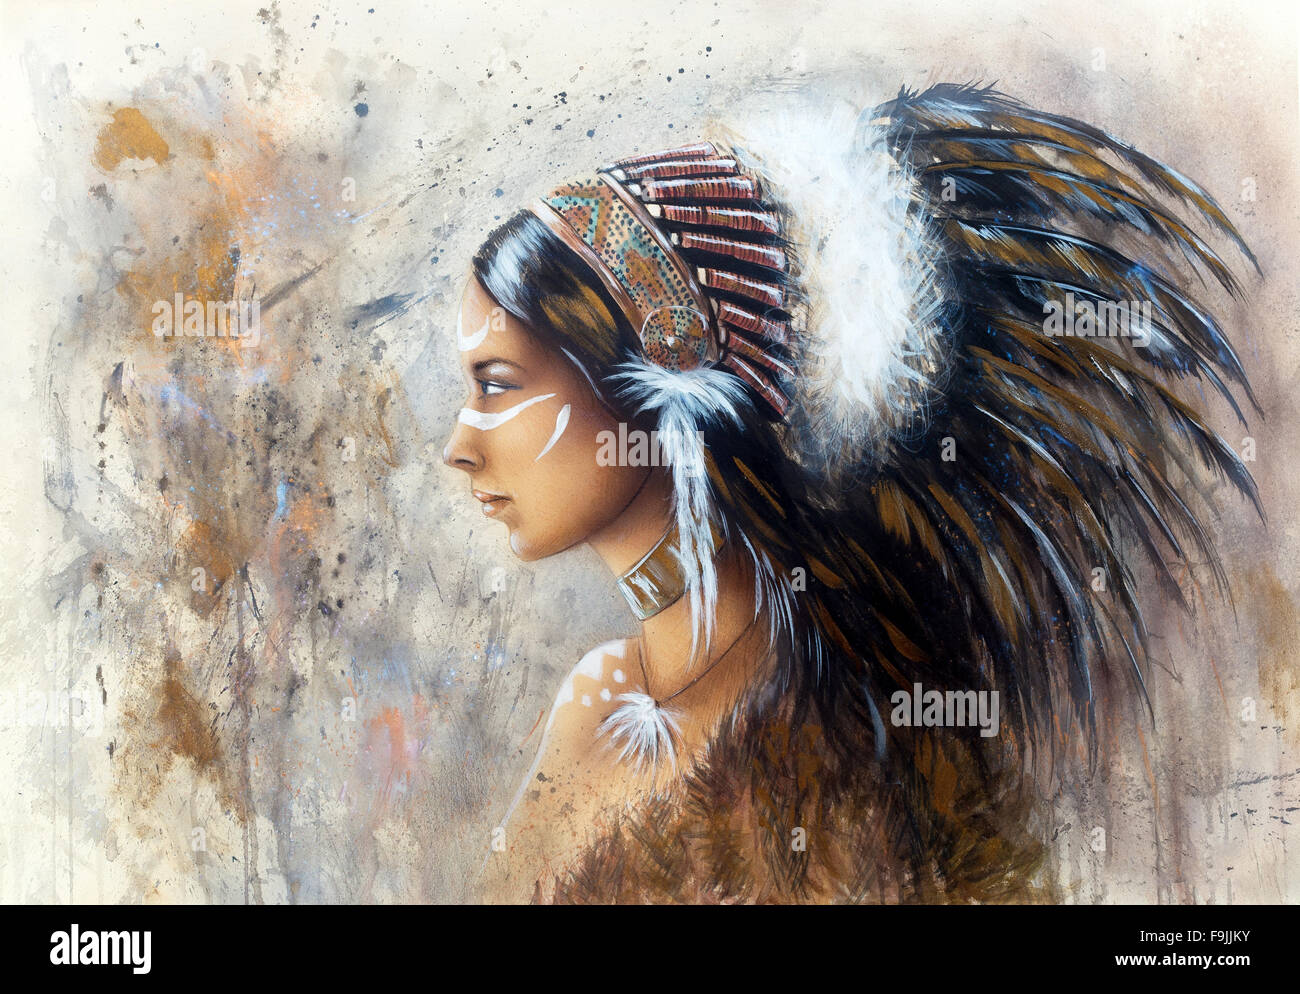 Hermosa pintura aerógrafo de una joven mujer india vistiendo un